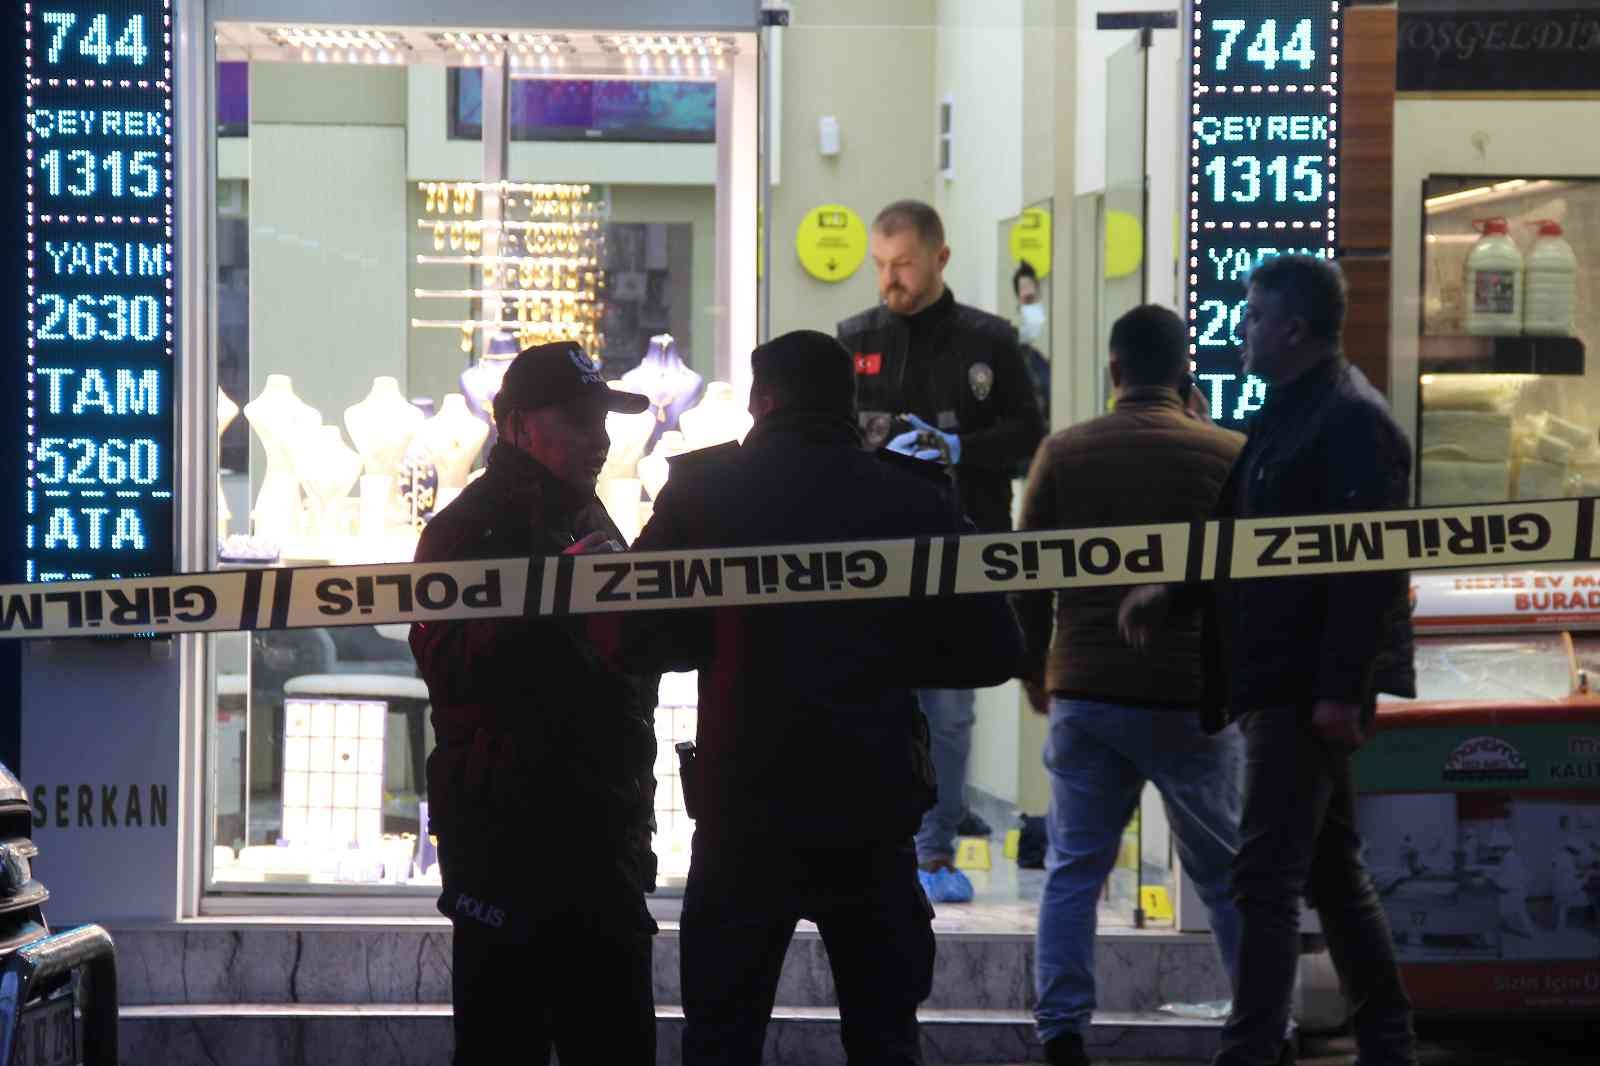 İzmir’de kuyumcuyu silahla yaralayıp altınları çalan şüpheli tutuklandı #izmir